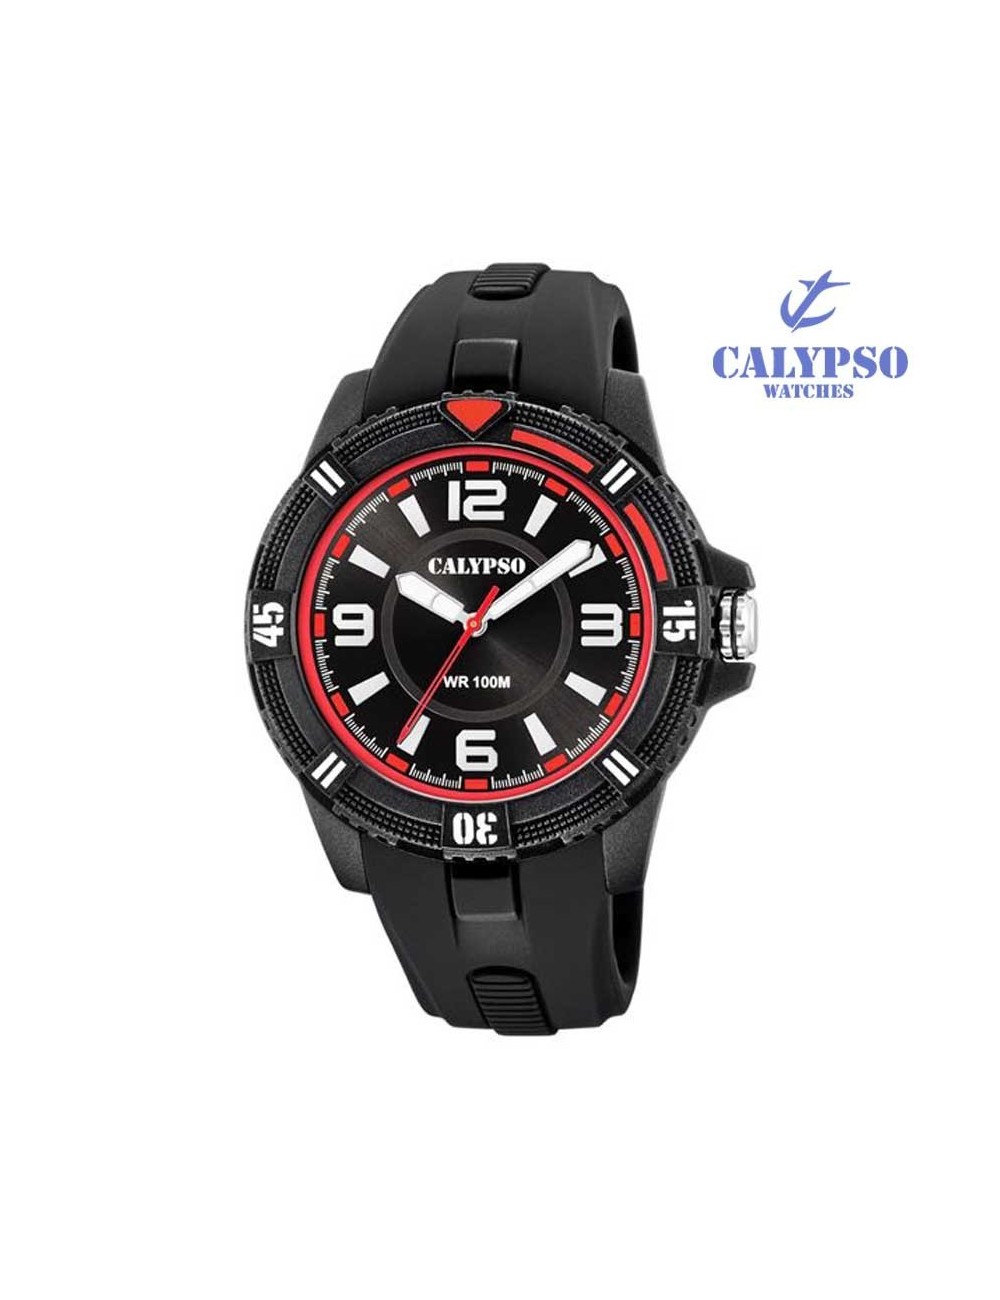 reloj-calypso-hombre-k5759-5